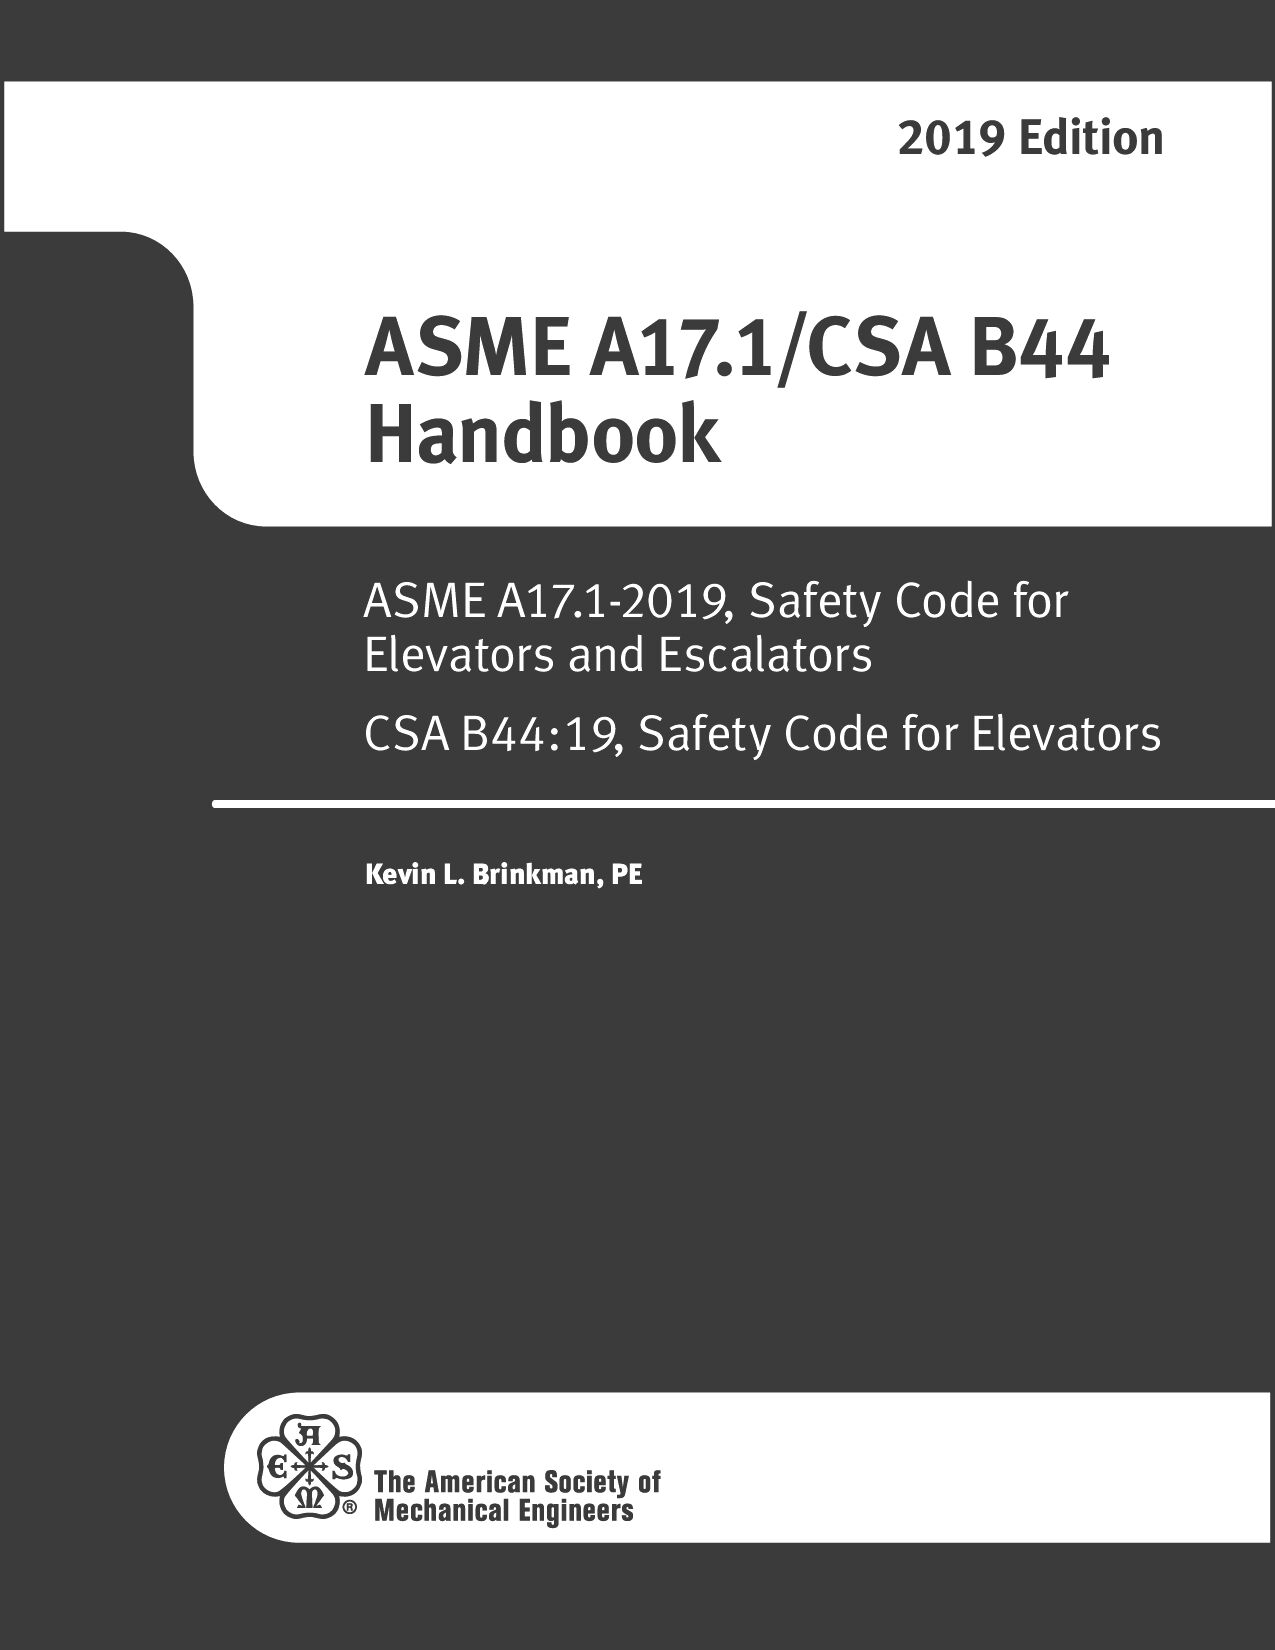 ASME A17.1-2019 Handbook